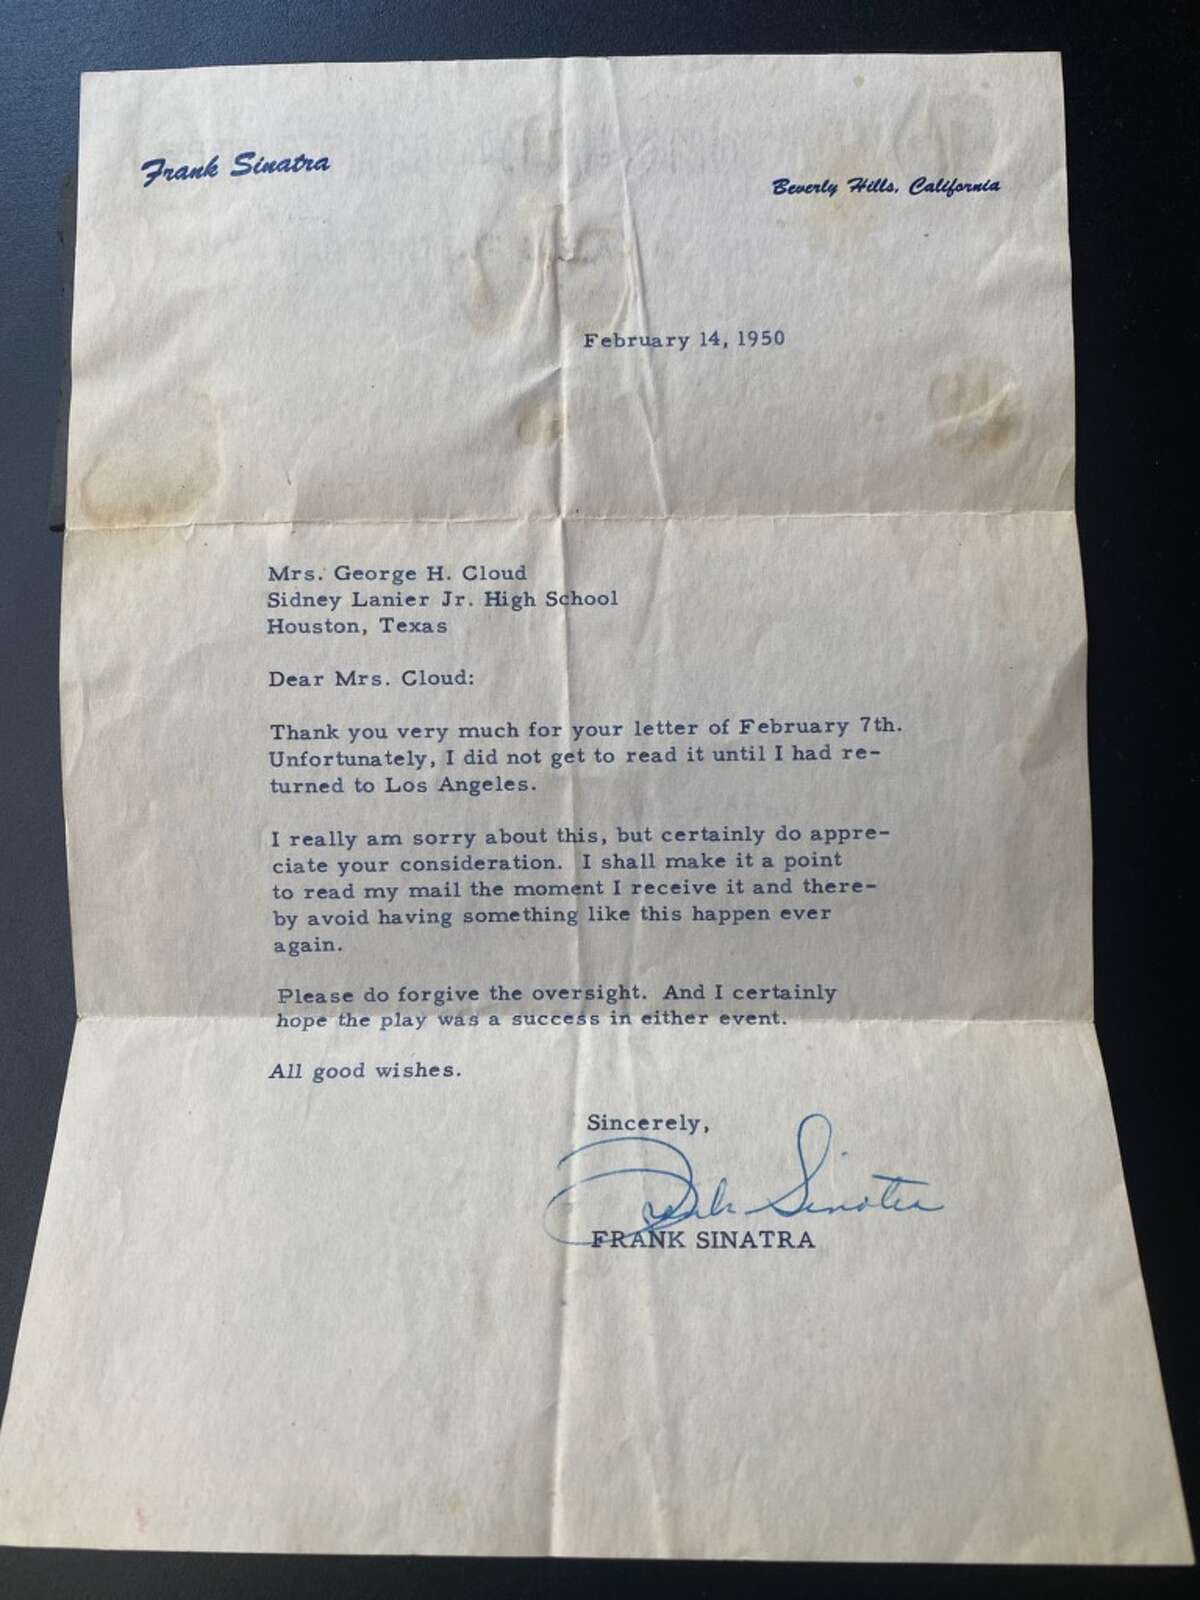 A letter allegedly written by Frank Sinatra in 1950.